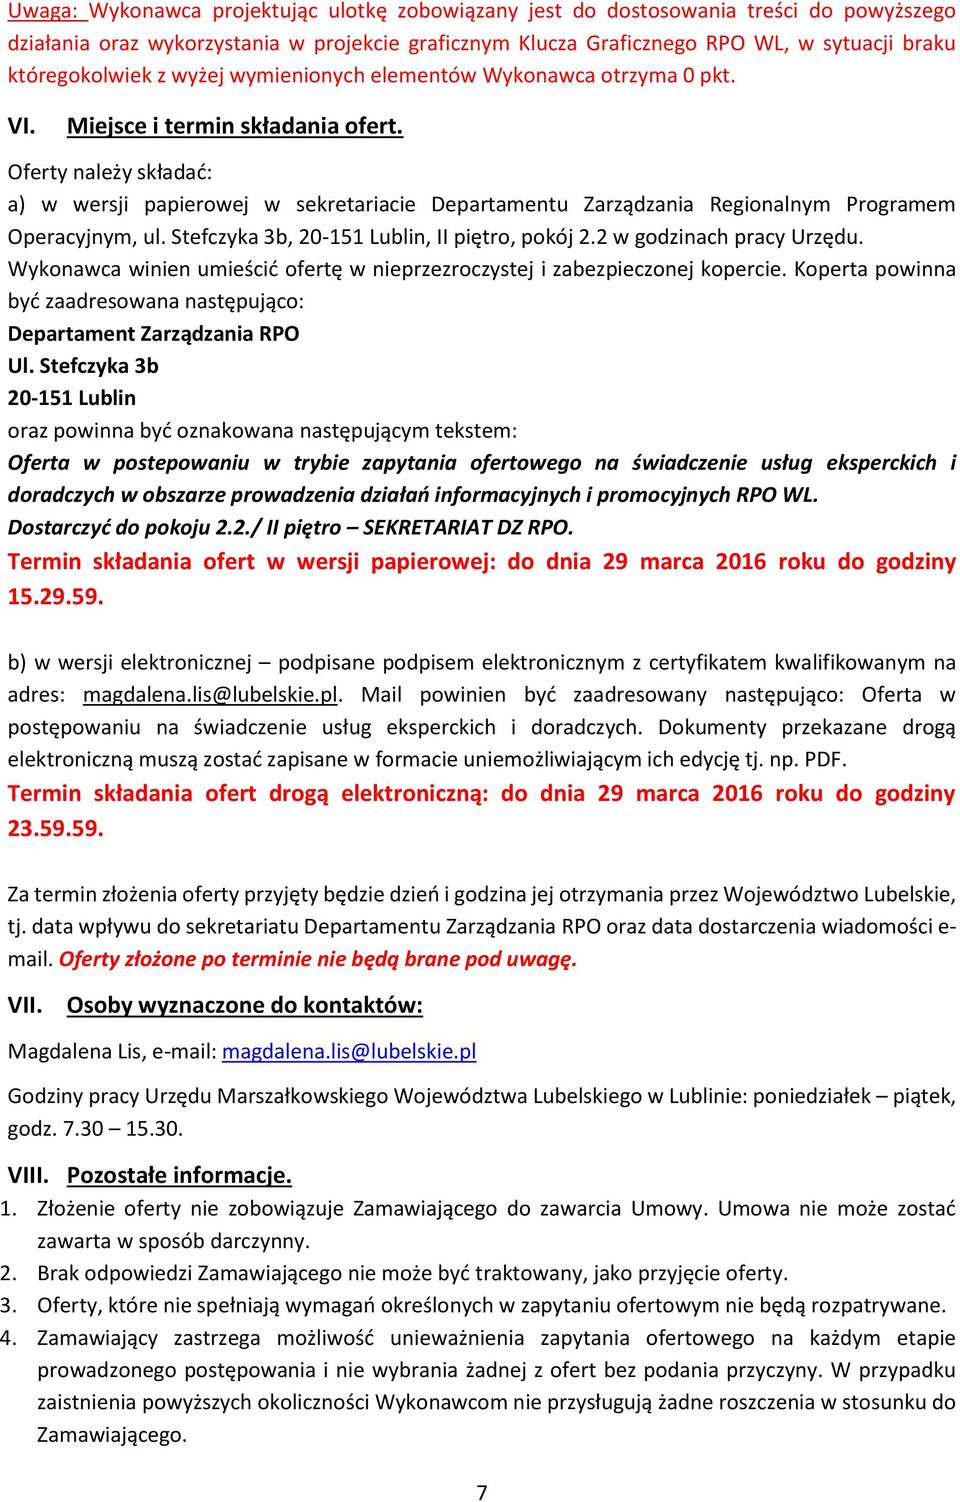 Oferty należy składać: a) w wersji papierowej w sekretariacie Departamentu Zarządzania Regionalnym Programem Operacyjnym, ul. Stefczyka 3b, 20-151 Lublin, II piętro, pokój 2.